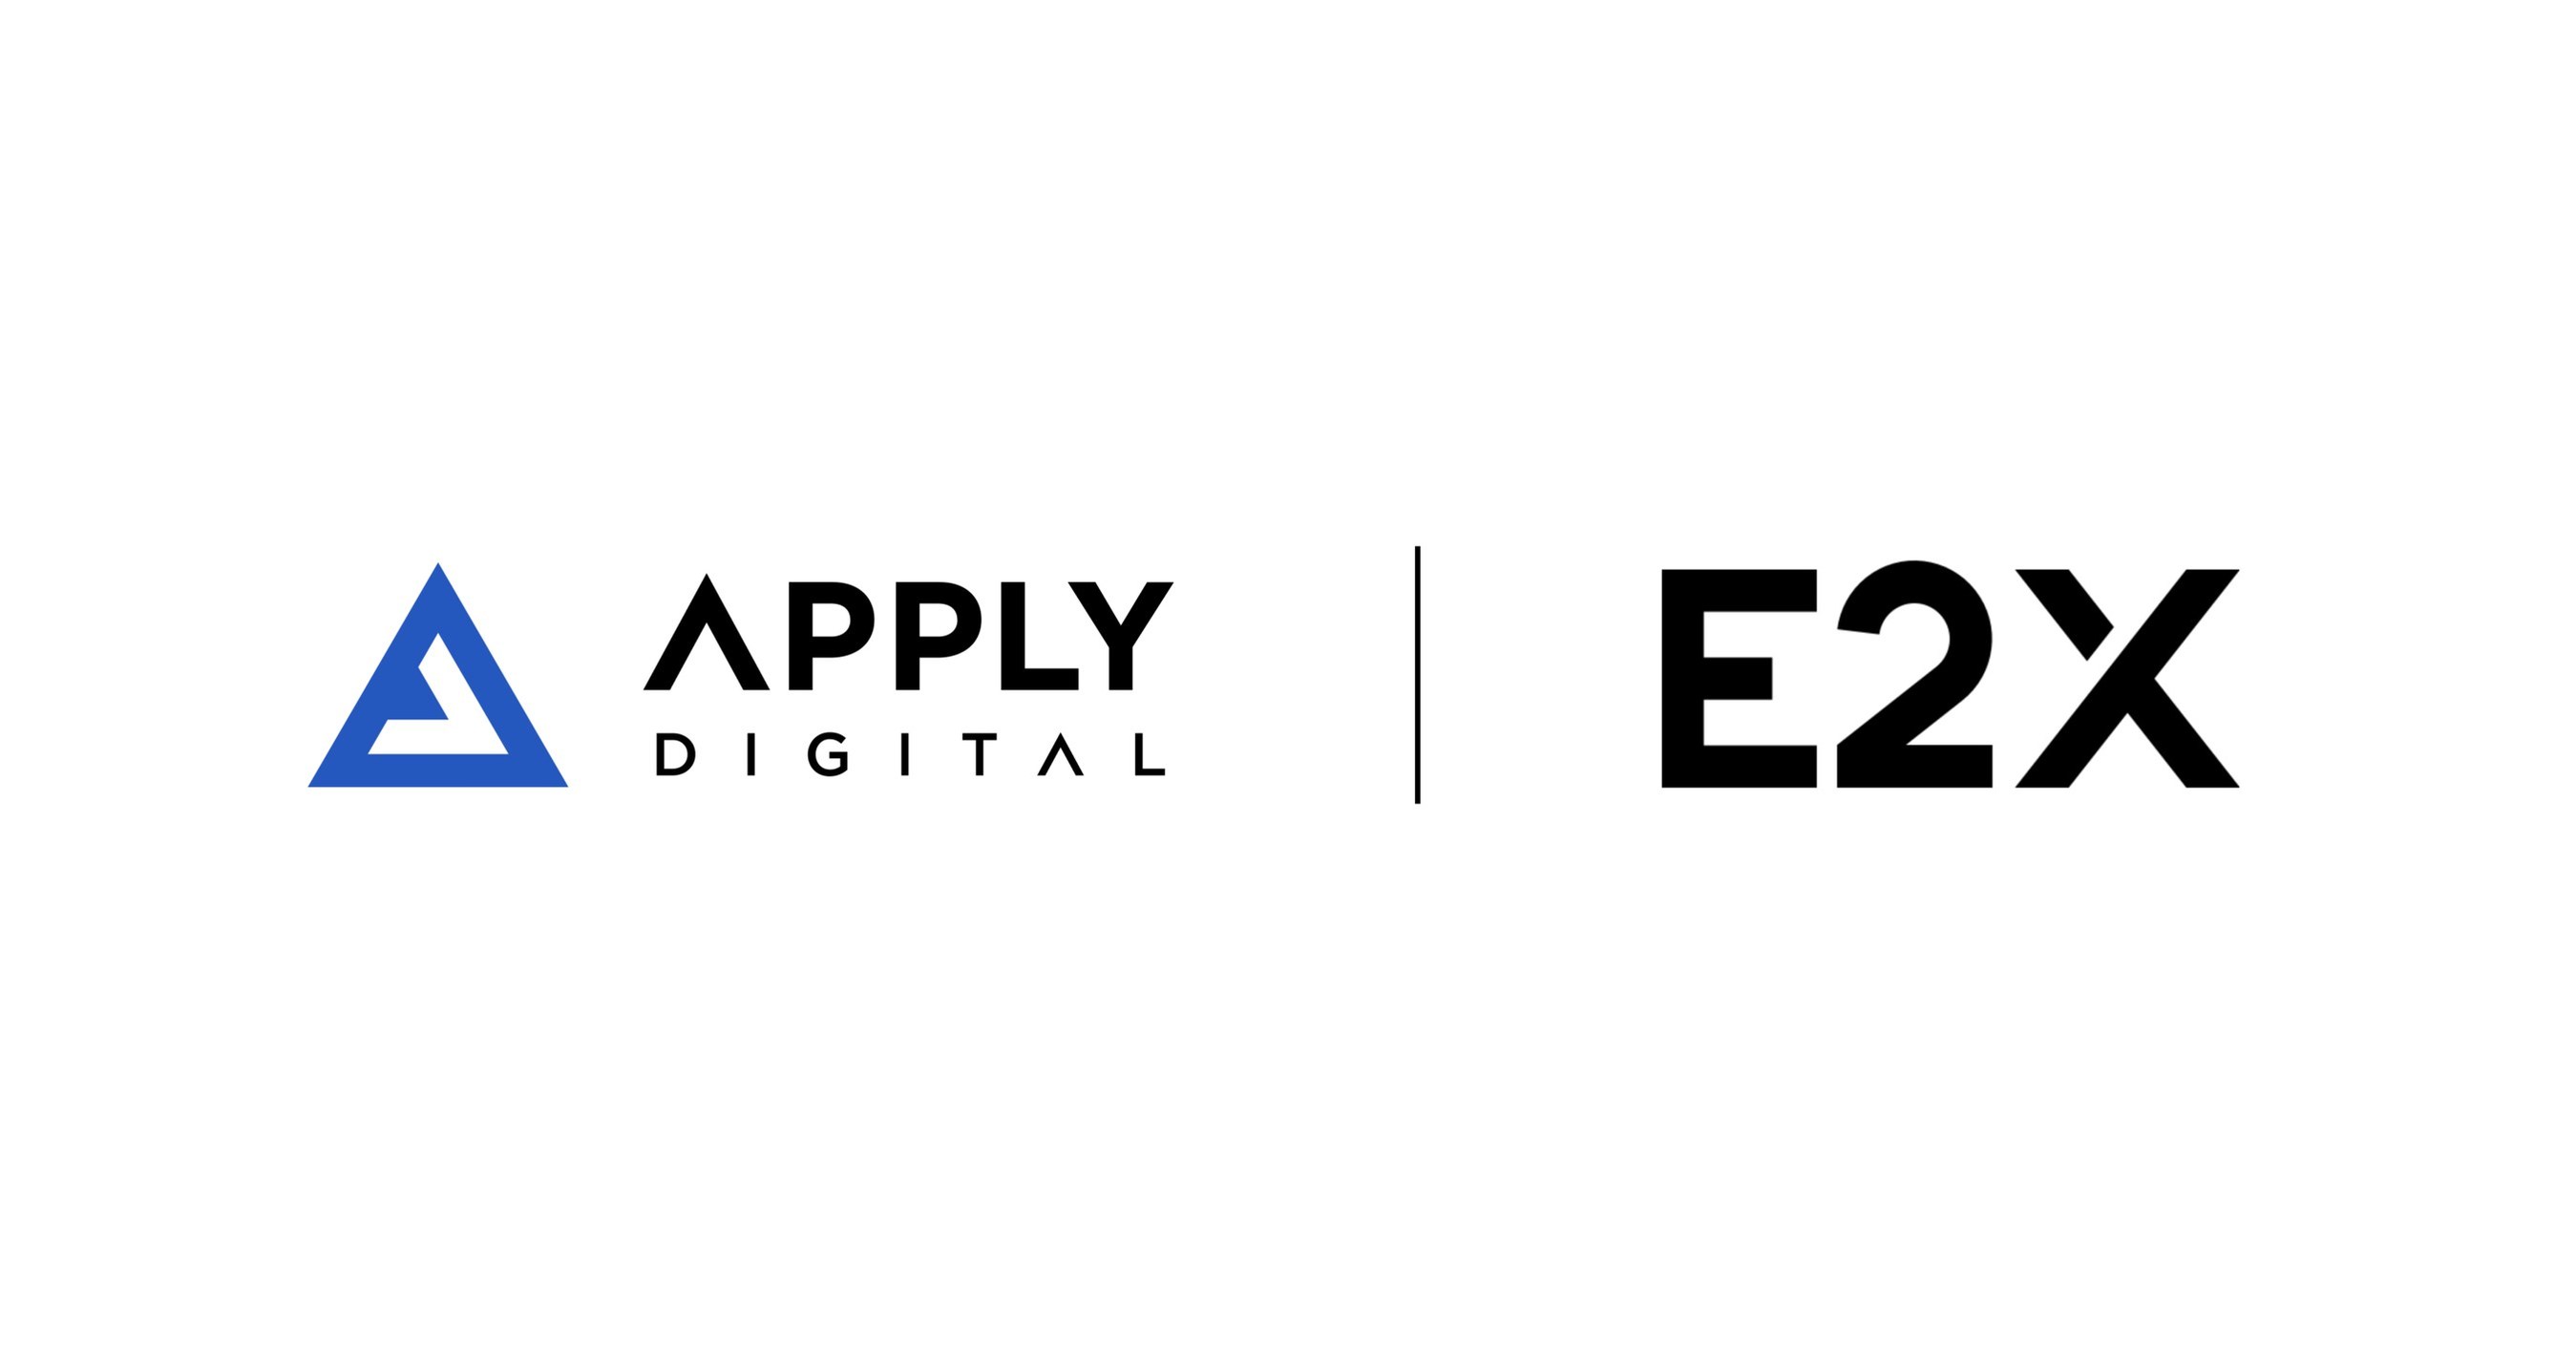 Apply Digital adquiere E2X.COM para desarrollar soluciones digitales y servicios comerciales para empresas modernas